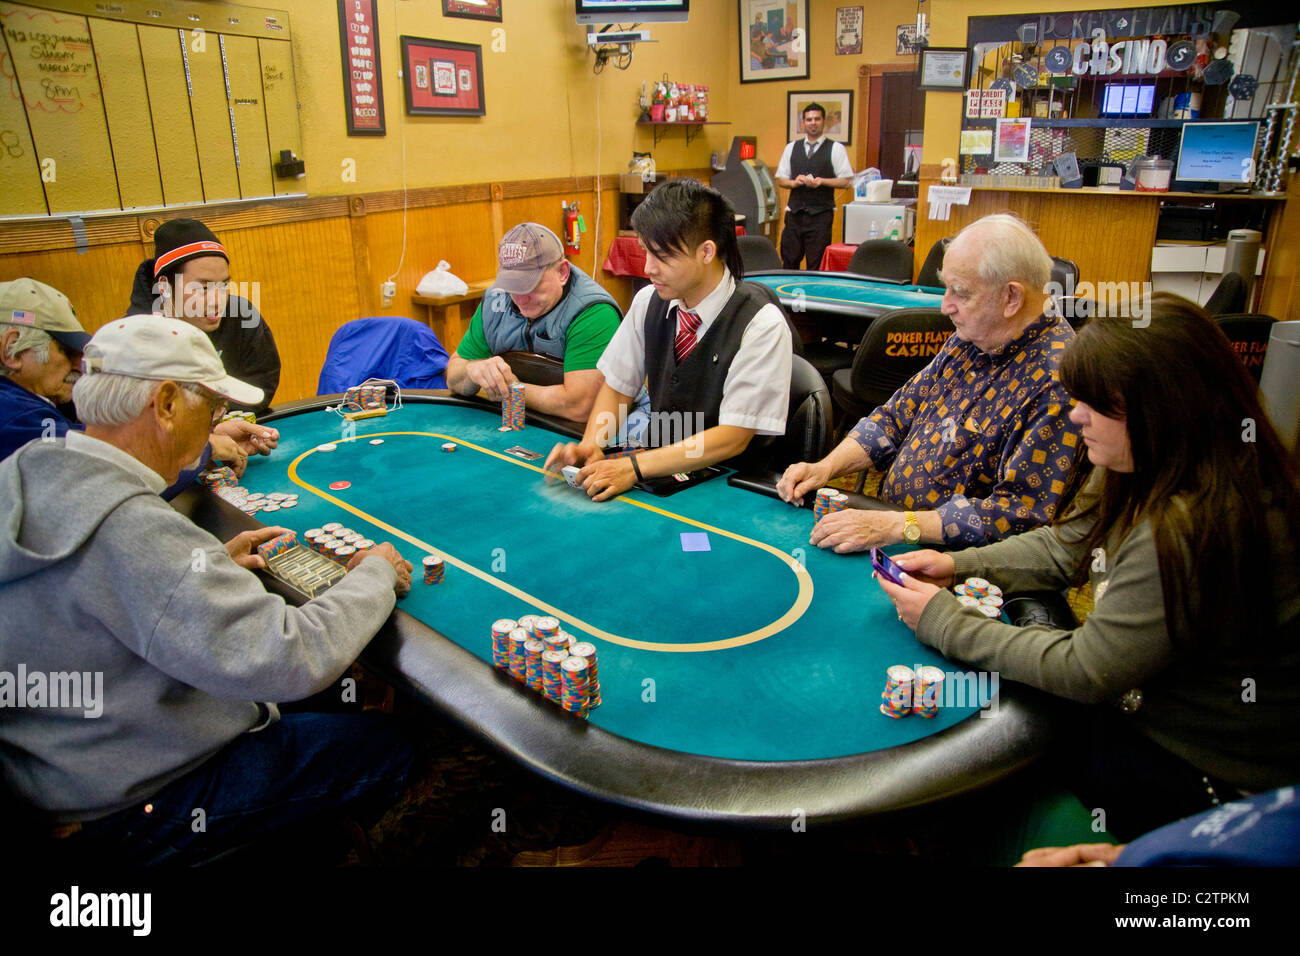 Texas holdem poker Banque de photographies et d'images à haute résolution -  Alamy